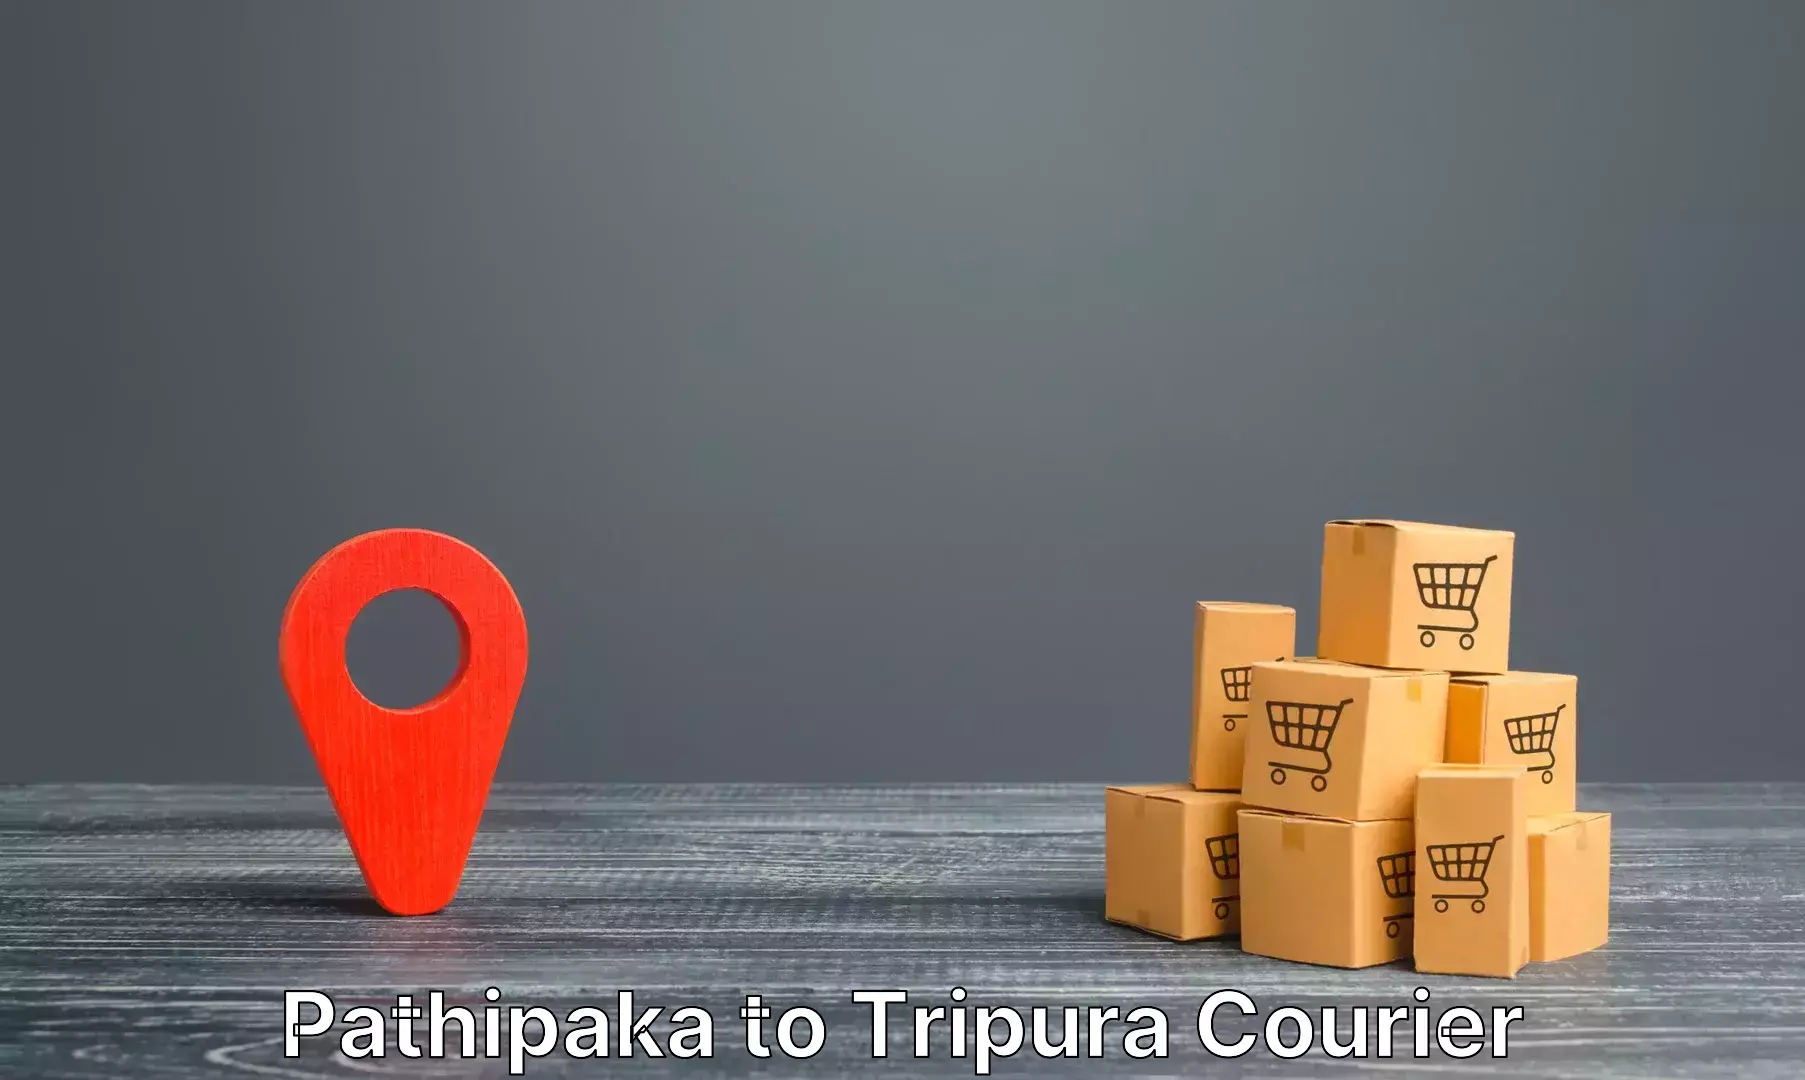 Luggage transport company Pathipaka to Kamalpur